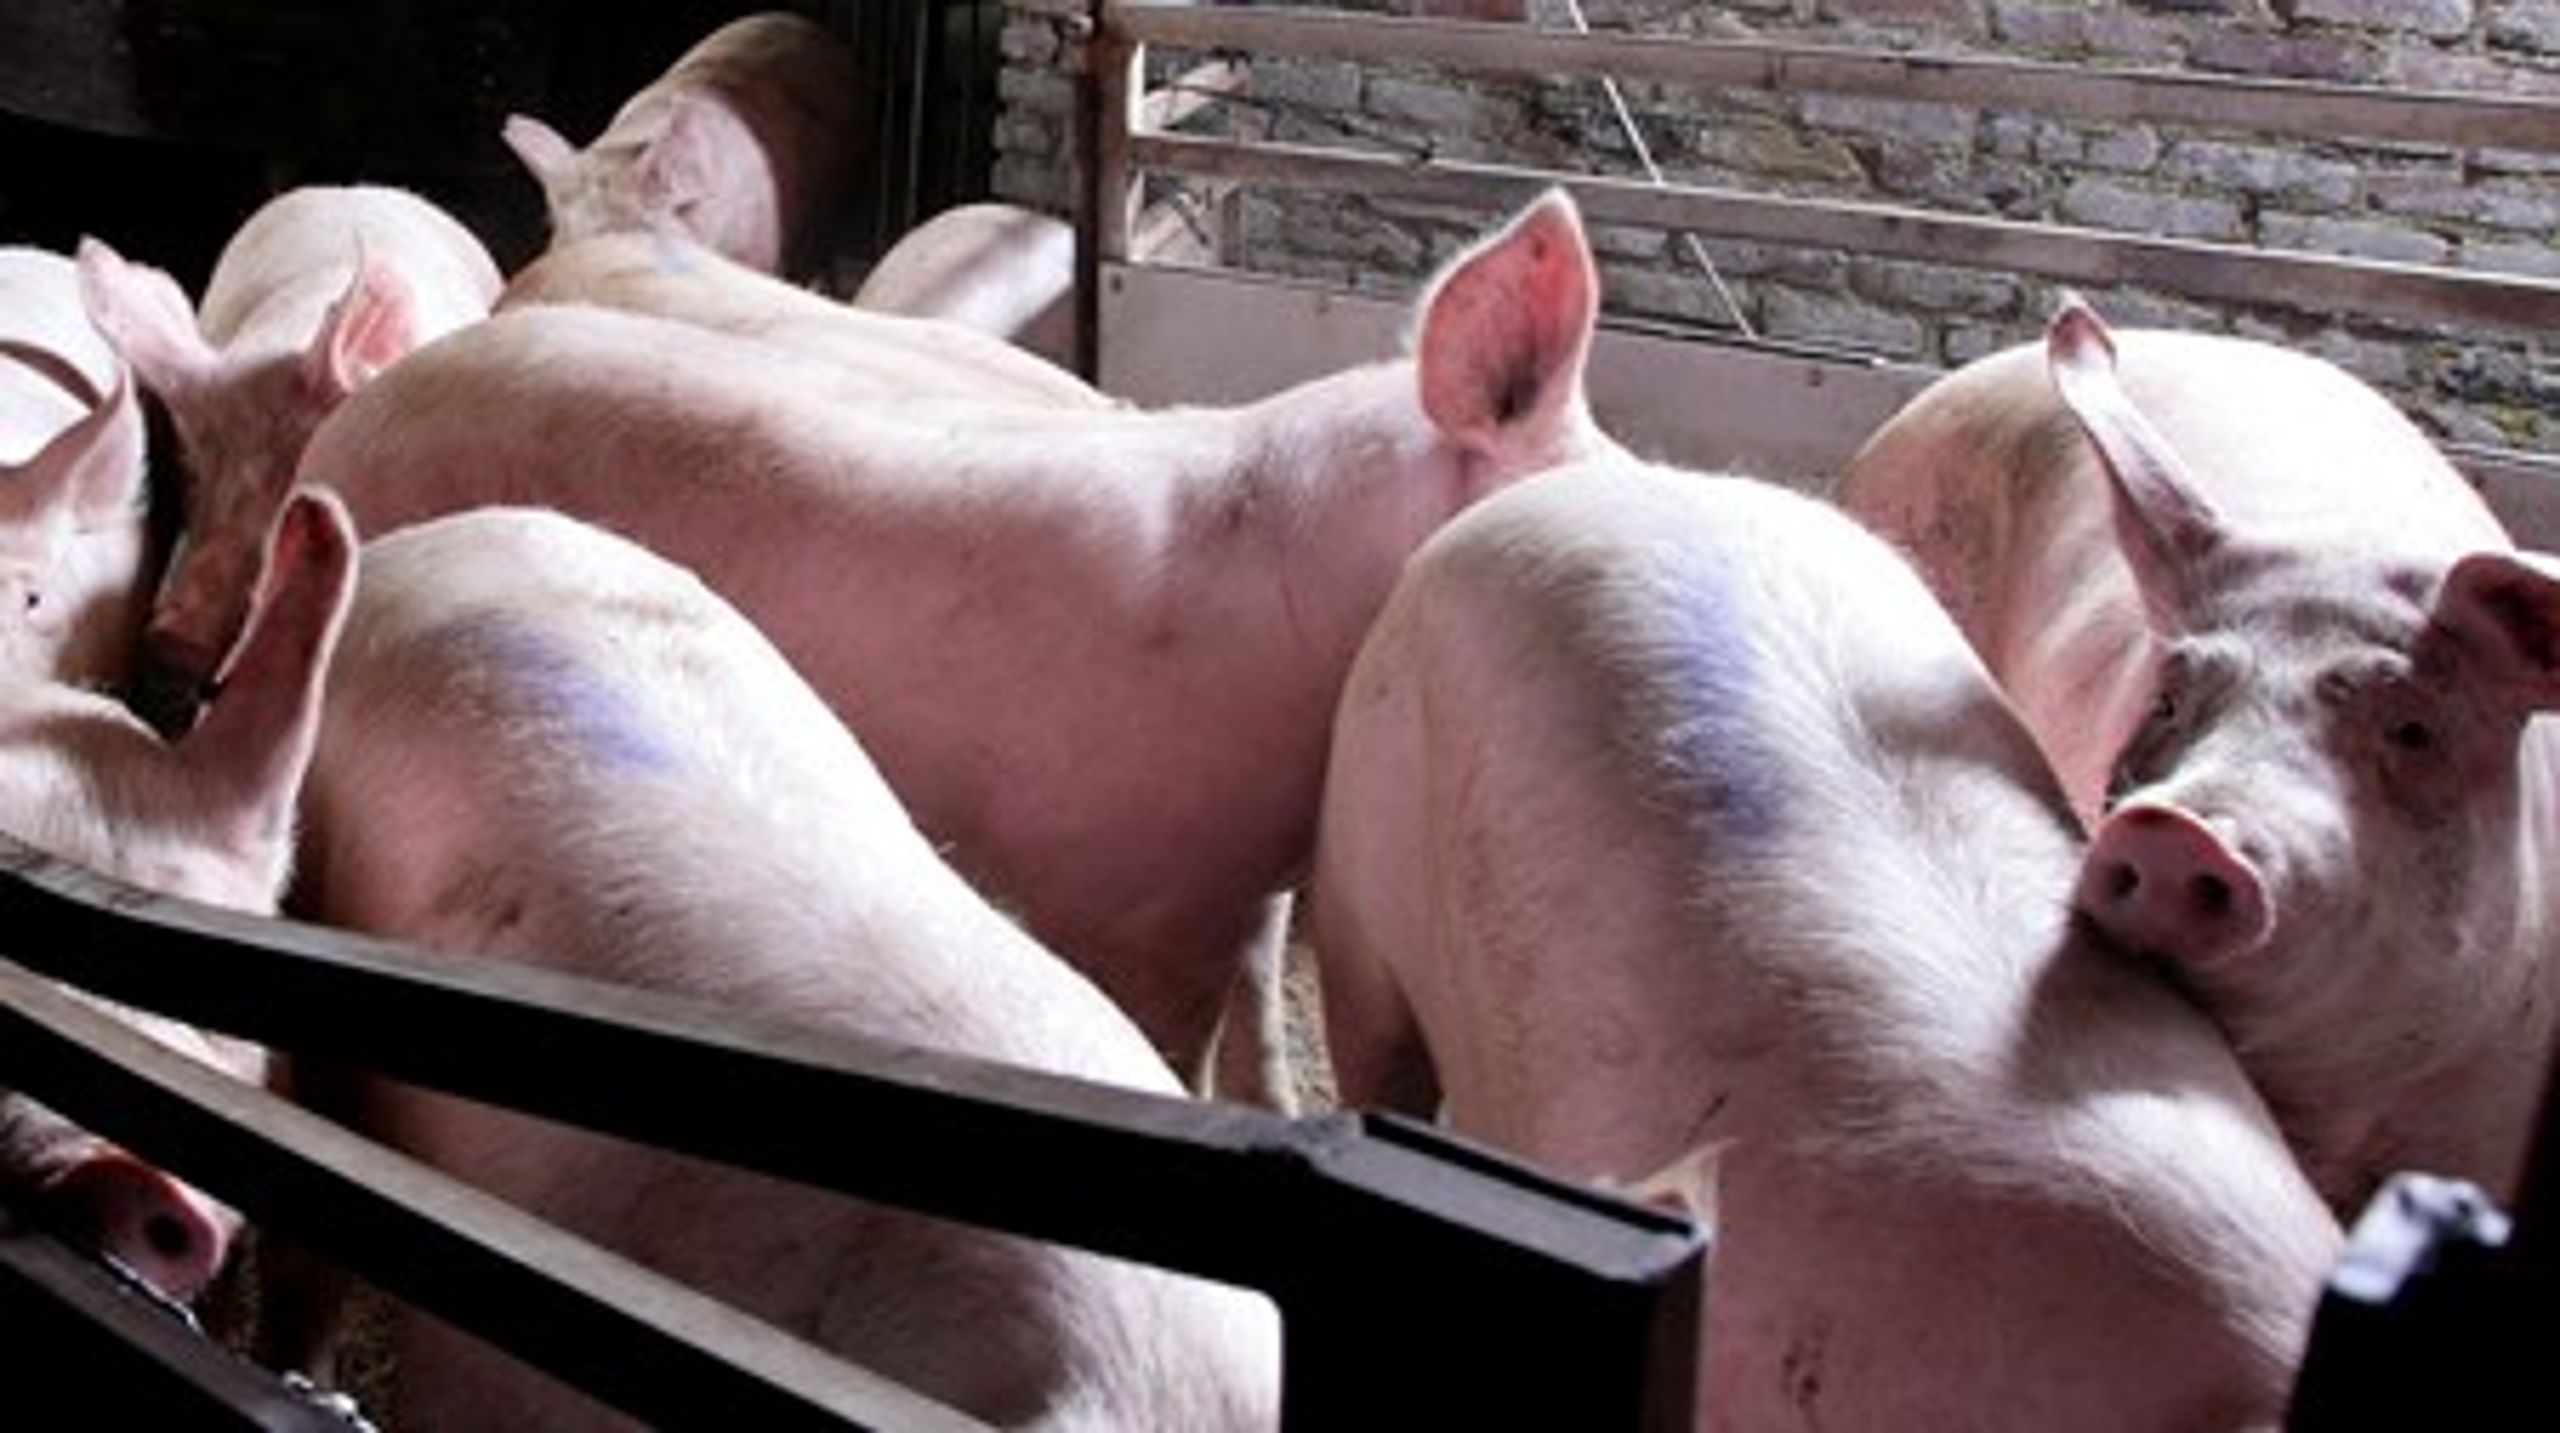 Det er særligt Danmarks intensive svineproduktion, som er skyld i et højt dansk ammoniakudslip.